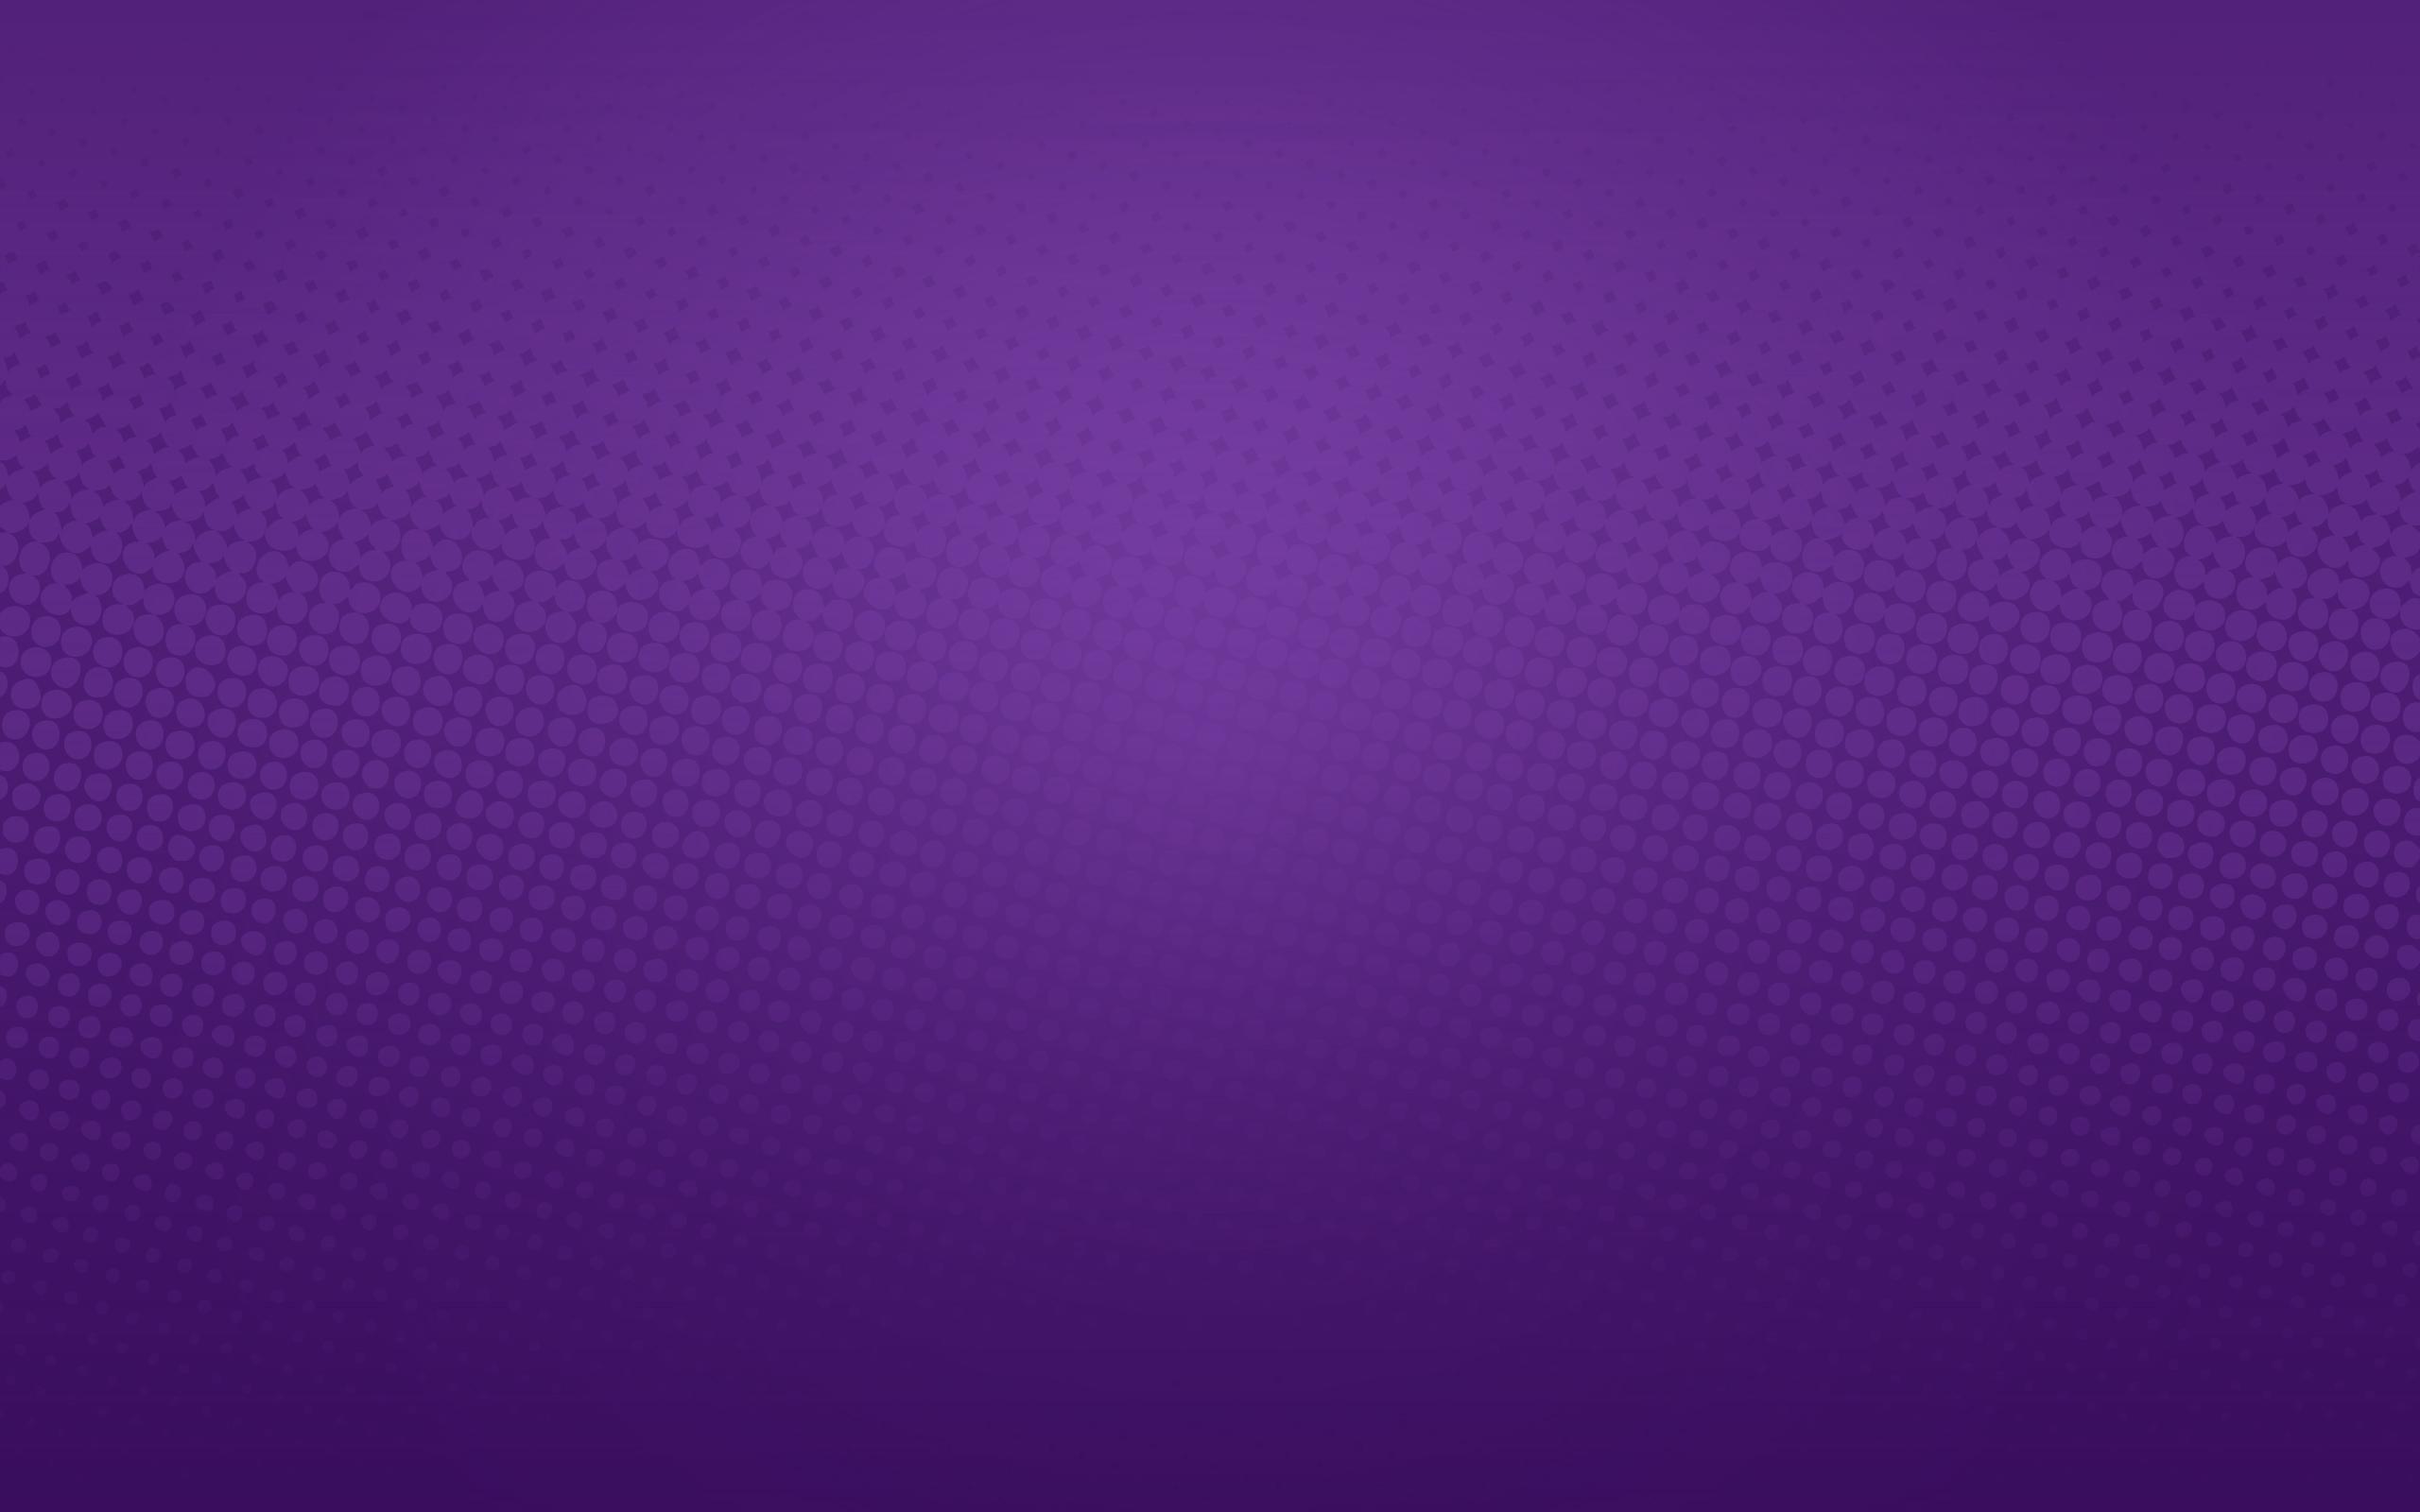 110535 Plain Purple Background Images Stock Photos  Vectors   Shutterstock